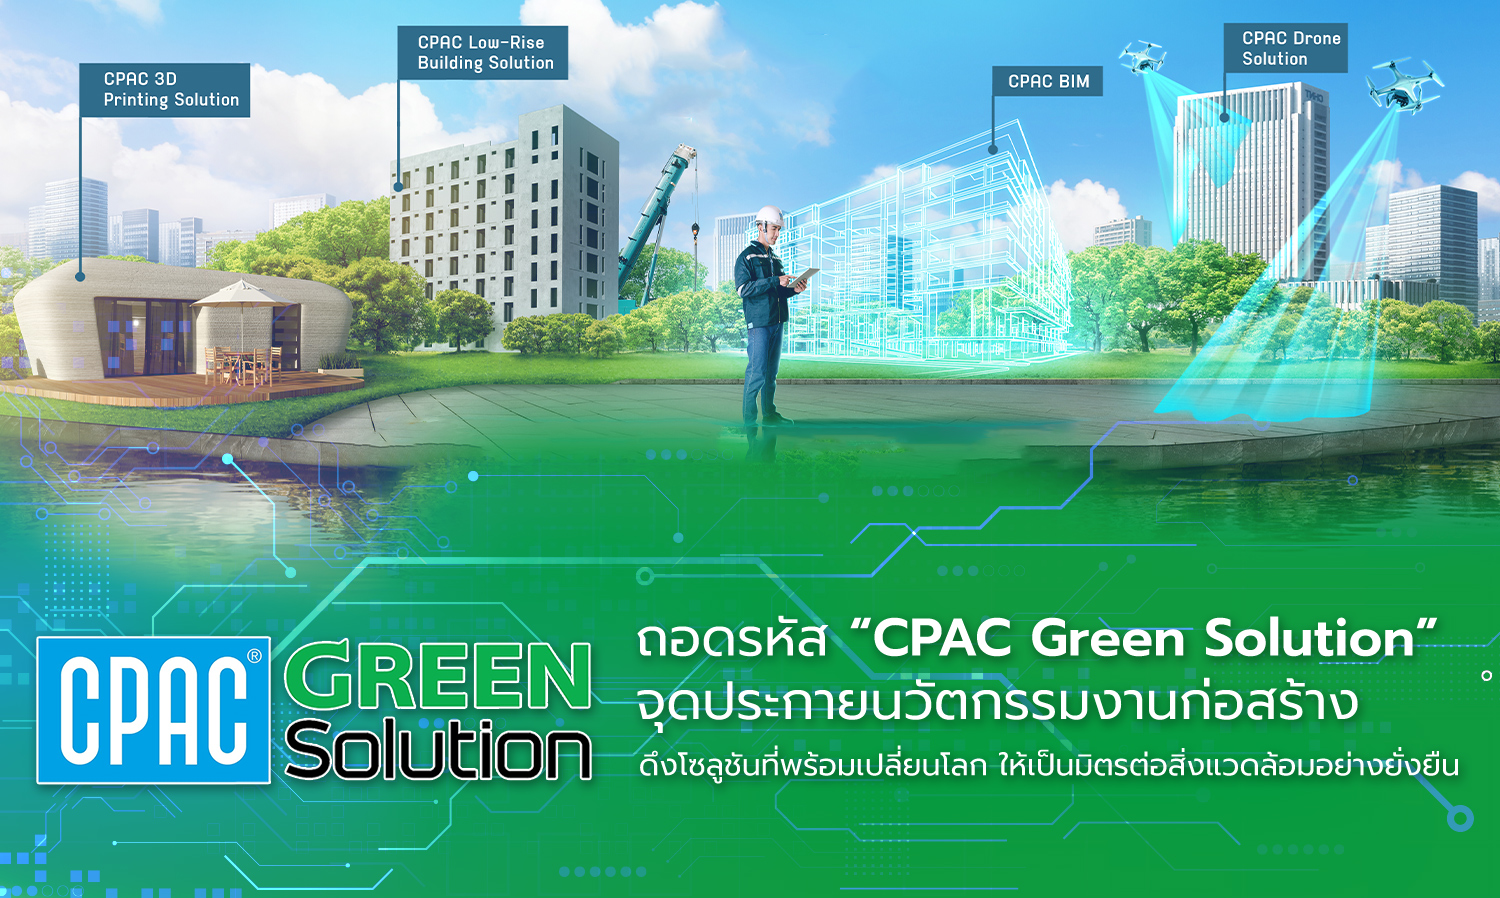 ถอดรหัส “CPAC Green Solution” จุดประกายนวัตกรรมงานก่อสร้าง ดึงโซลูชันที่พร้อมเปลี่ยนโลก ให้เป็นมิตรต่อสิ่งแวดล้อมอย่างยั่งยืน